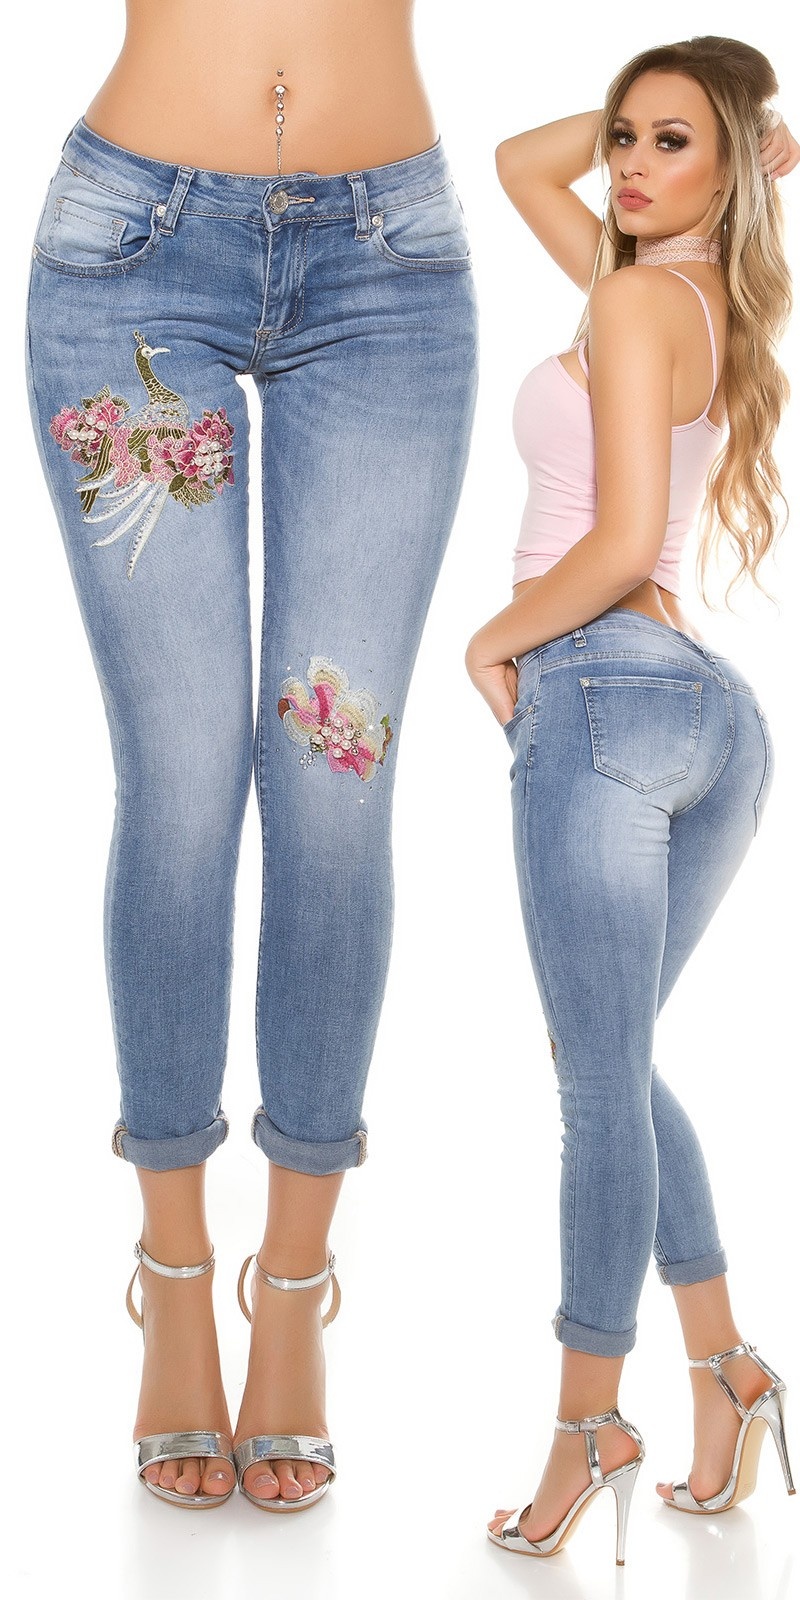 Sexy Jeans - Sexy Ass Jeans afbeeldingen, beelden en stockfoto's - iStock ...